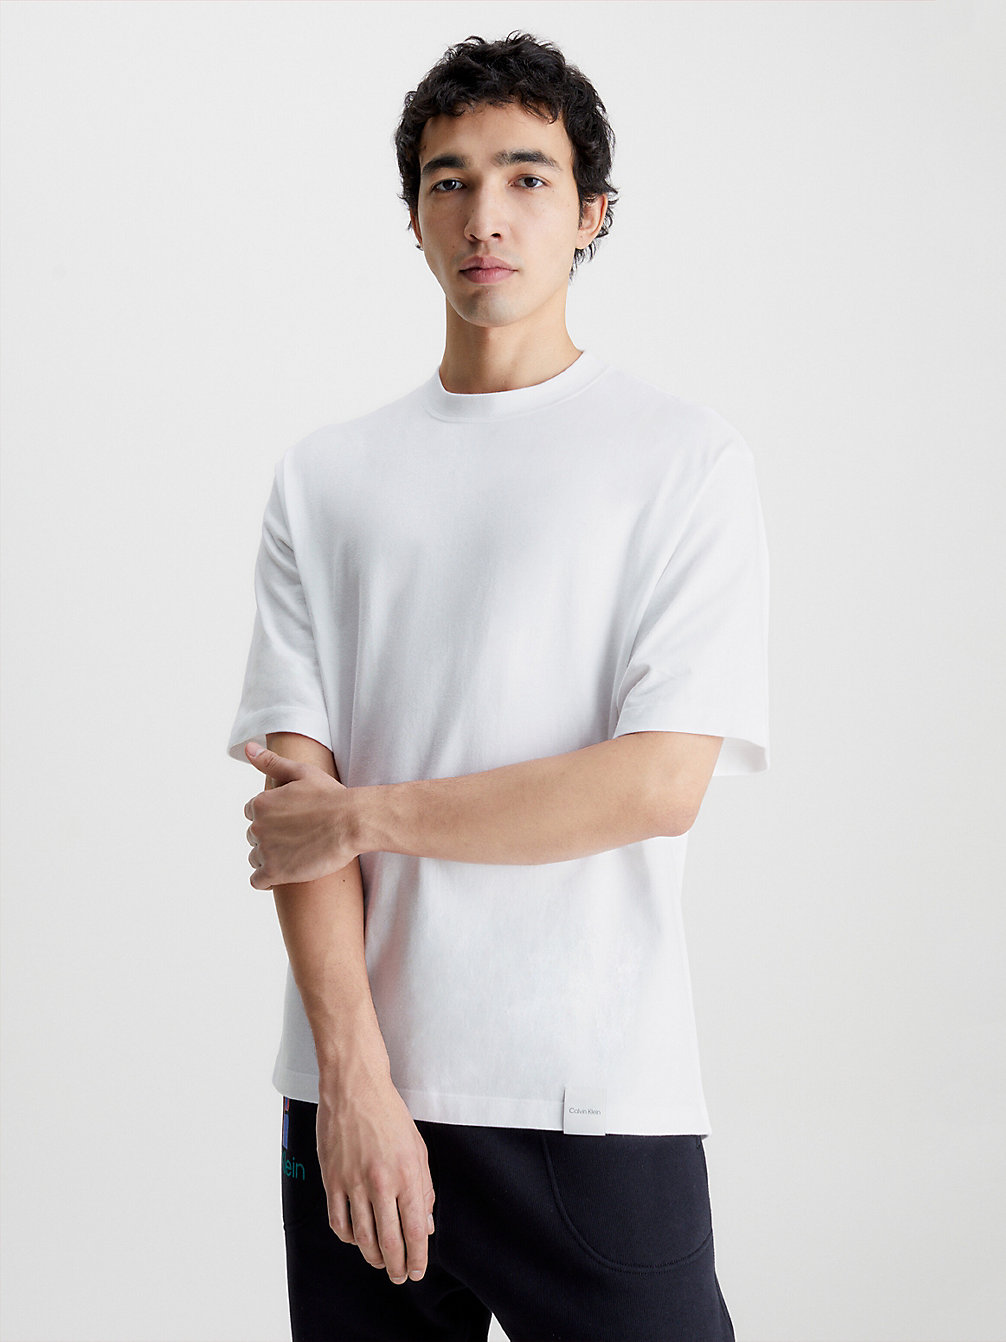 BRILLIANT WHITE > Swobodny T-Shirt Unisex - CK Standards > undefined Mężczyźni - Calvin Klein